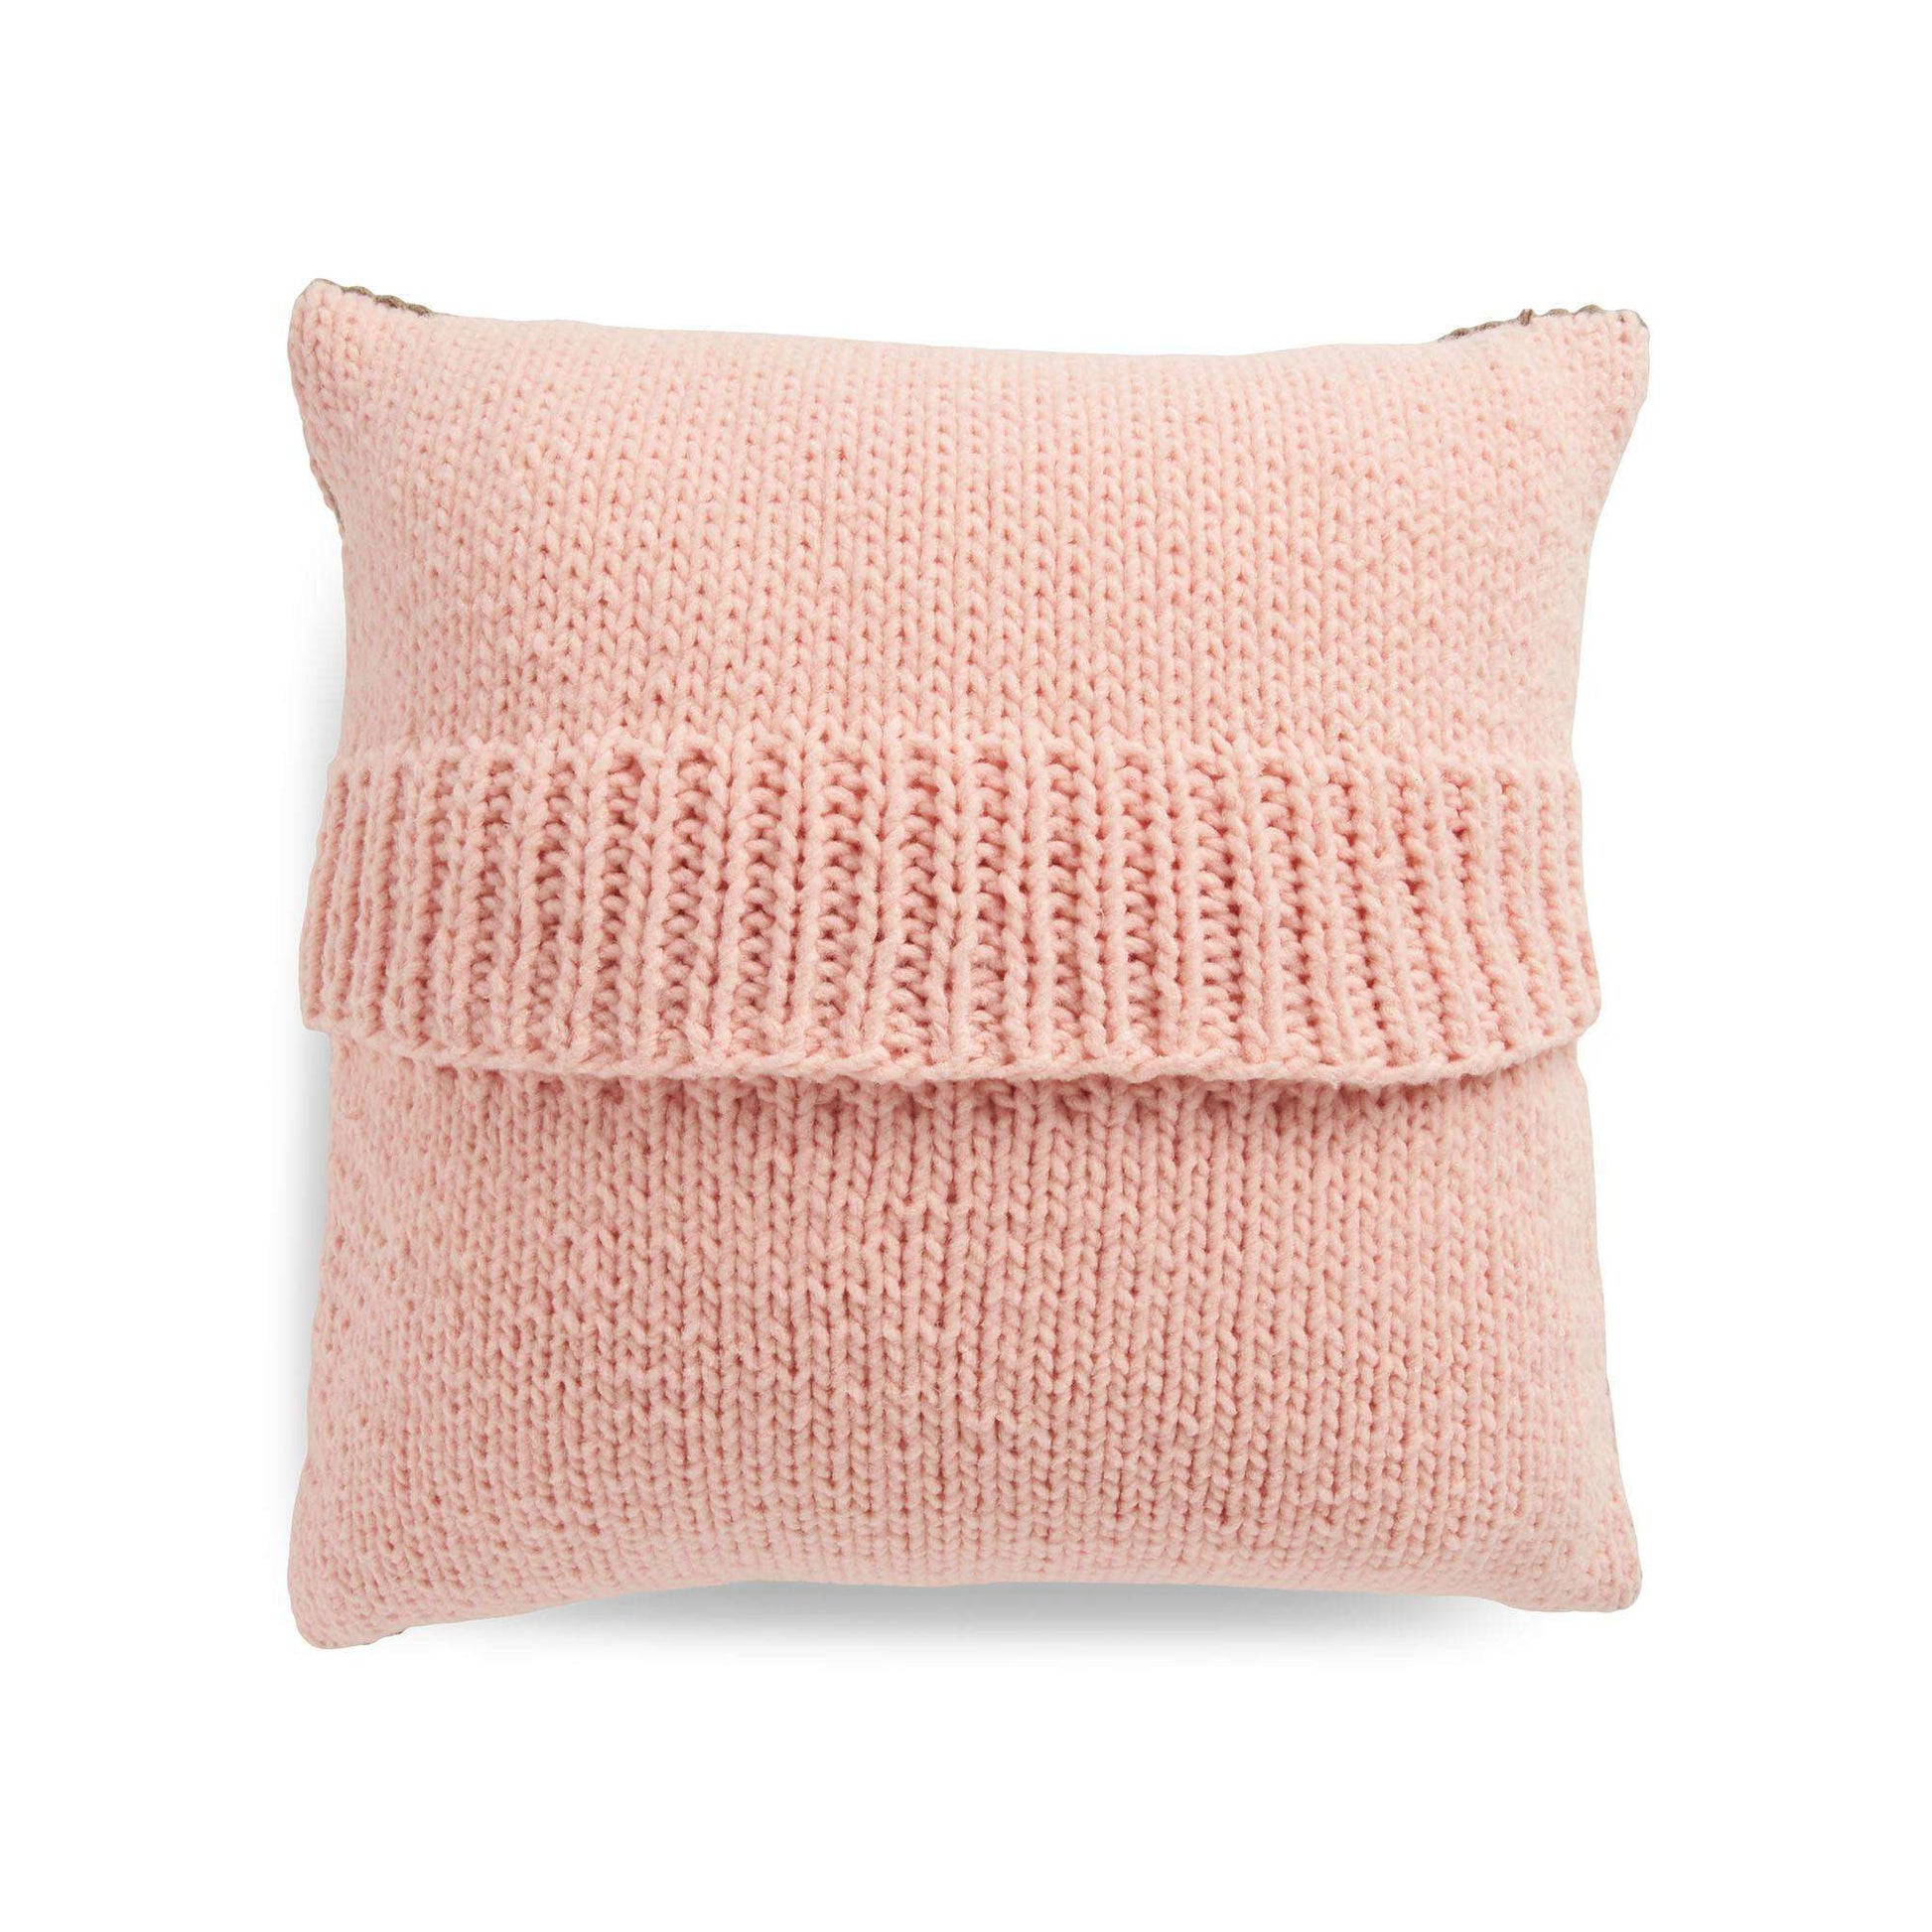 Free Bernat Knit Windowpane Pillow Pattern